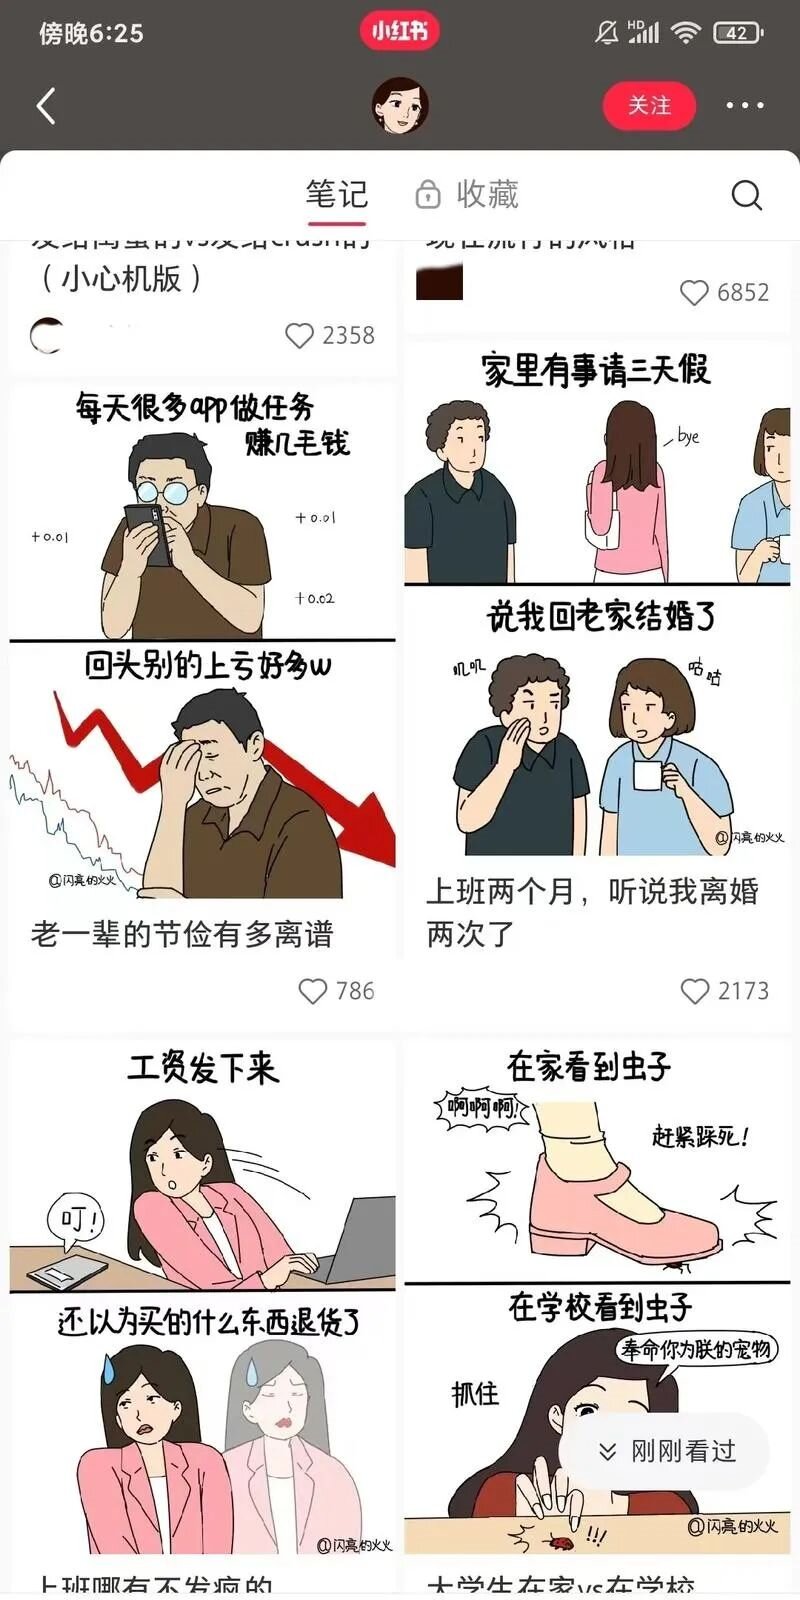 中式发疯文学，搞怪漫画图文，蹭着热点利用AI去起爆款账号！